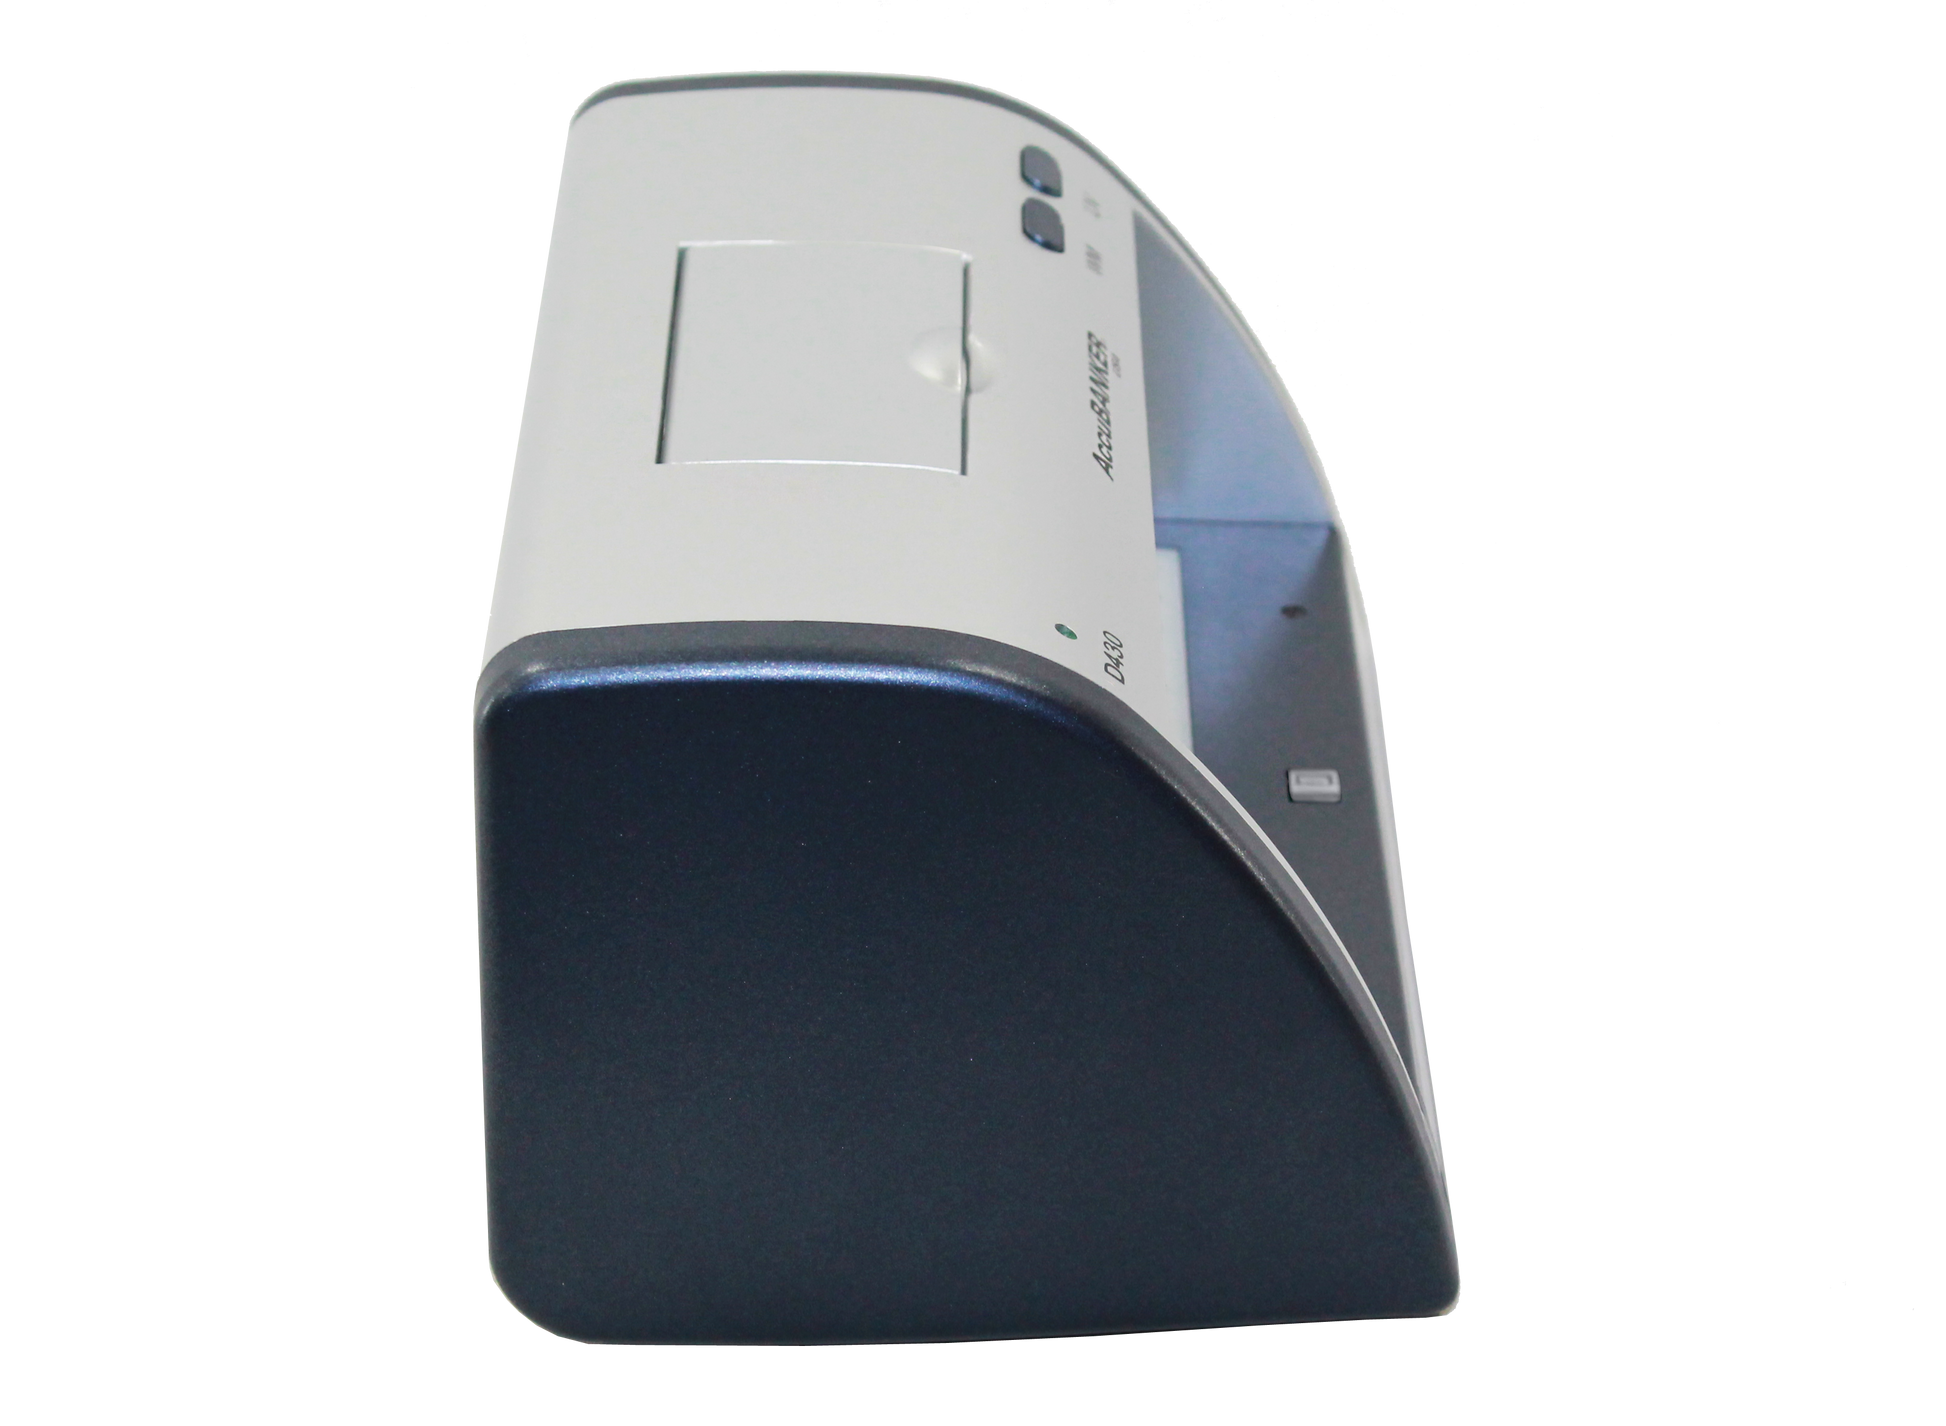 Detectora de billetes falsos LED430 vista lateral derecha